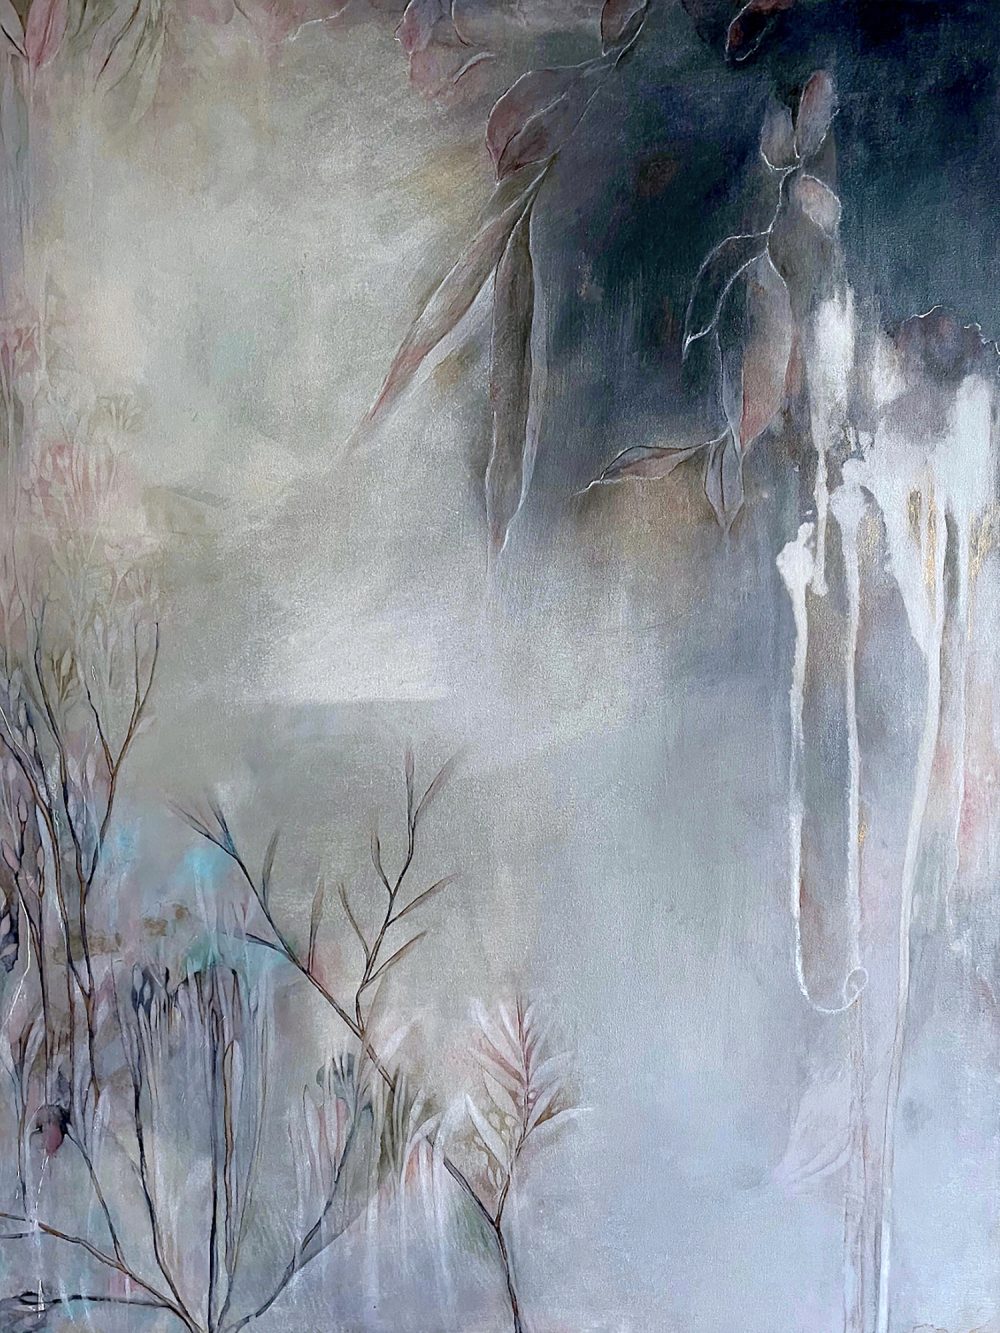 Through The Mist by Mishel Schwartz